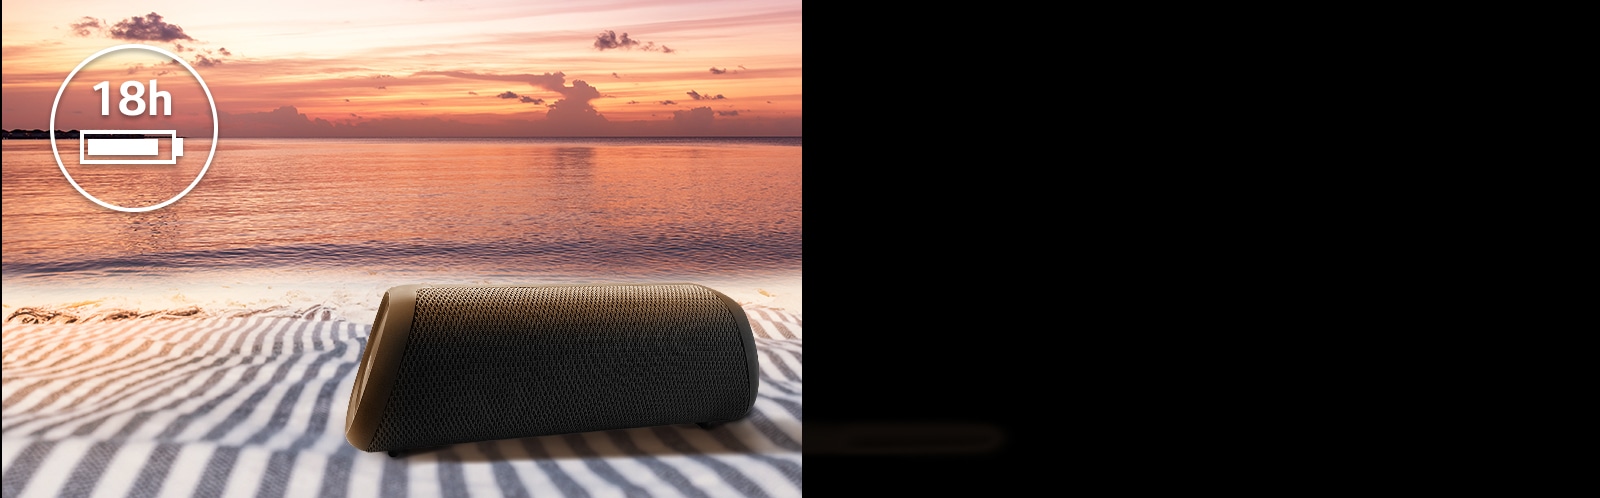 La bocina se coloca sobre una toalla de playa. Frente al altavoz, se muestra la puesta de sol en la playa para ilustrar que este esta bocina se puede reproducir hasta 18 horas.